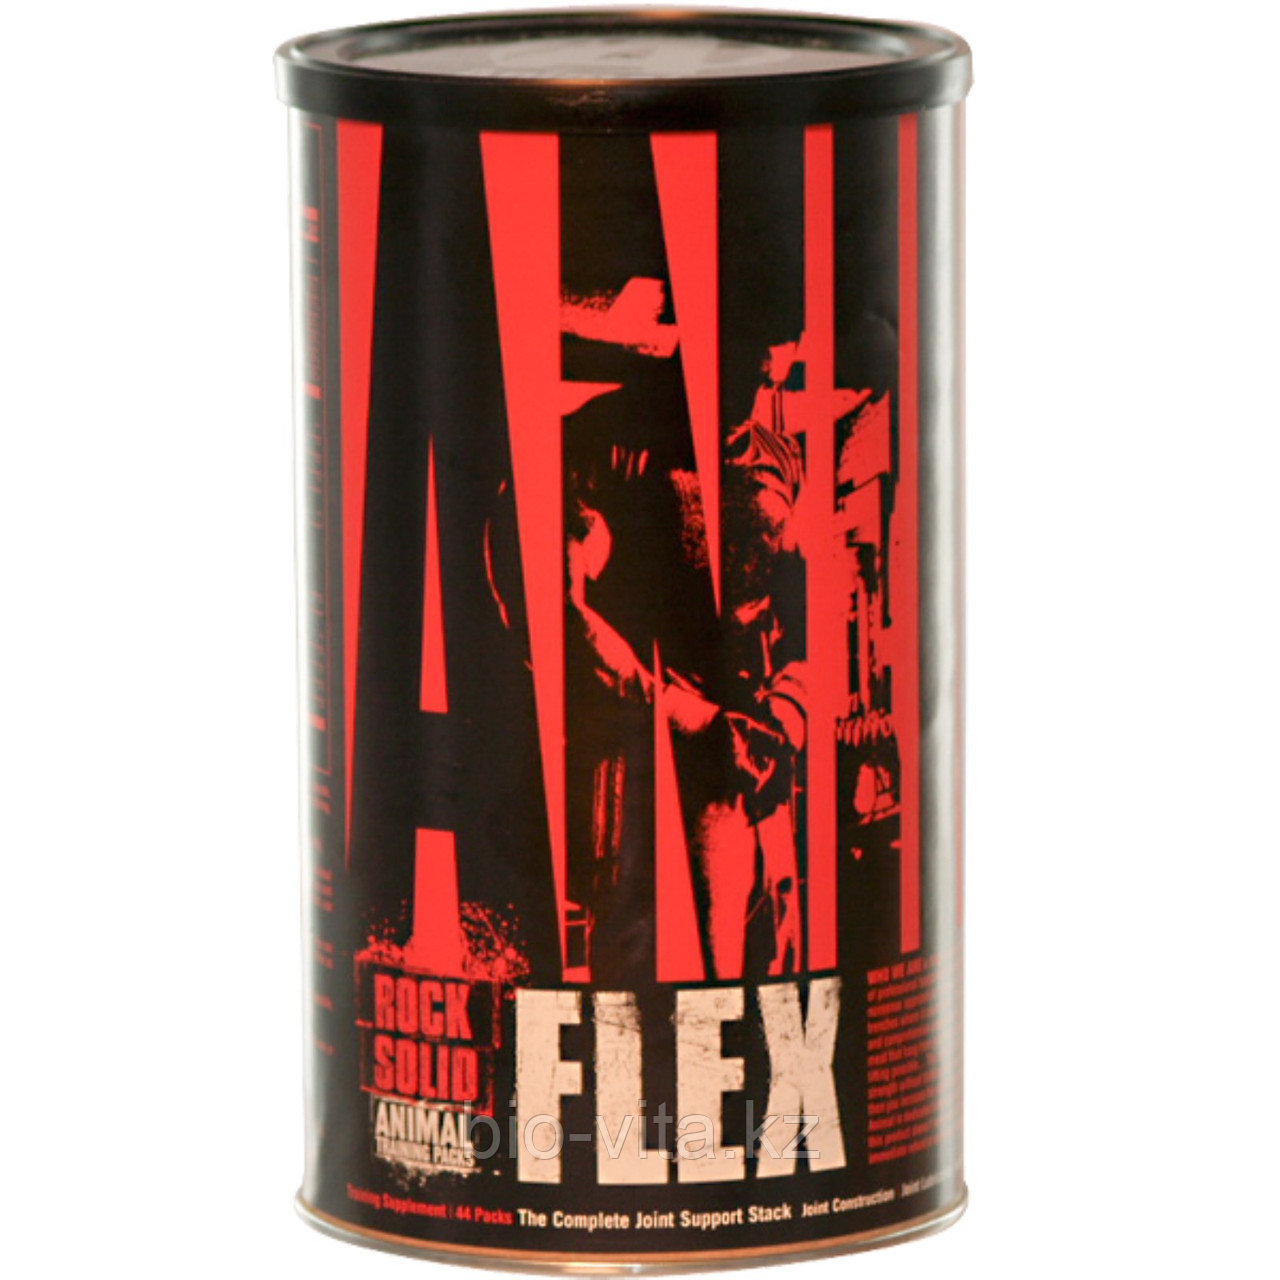 ЭнималФлекс/Animal Flax,комплекс для поддержания мышц, 44 пакета.   Universal Nutrition